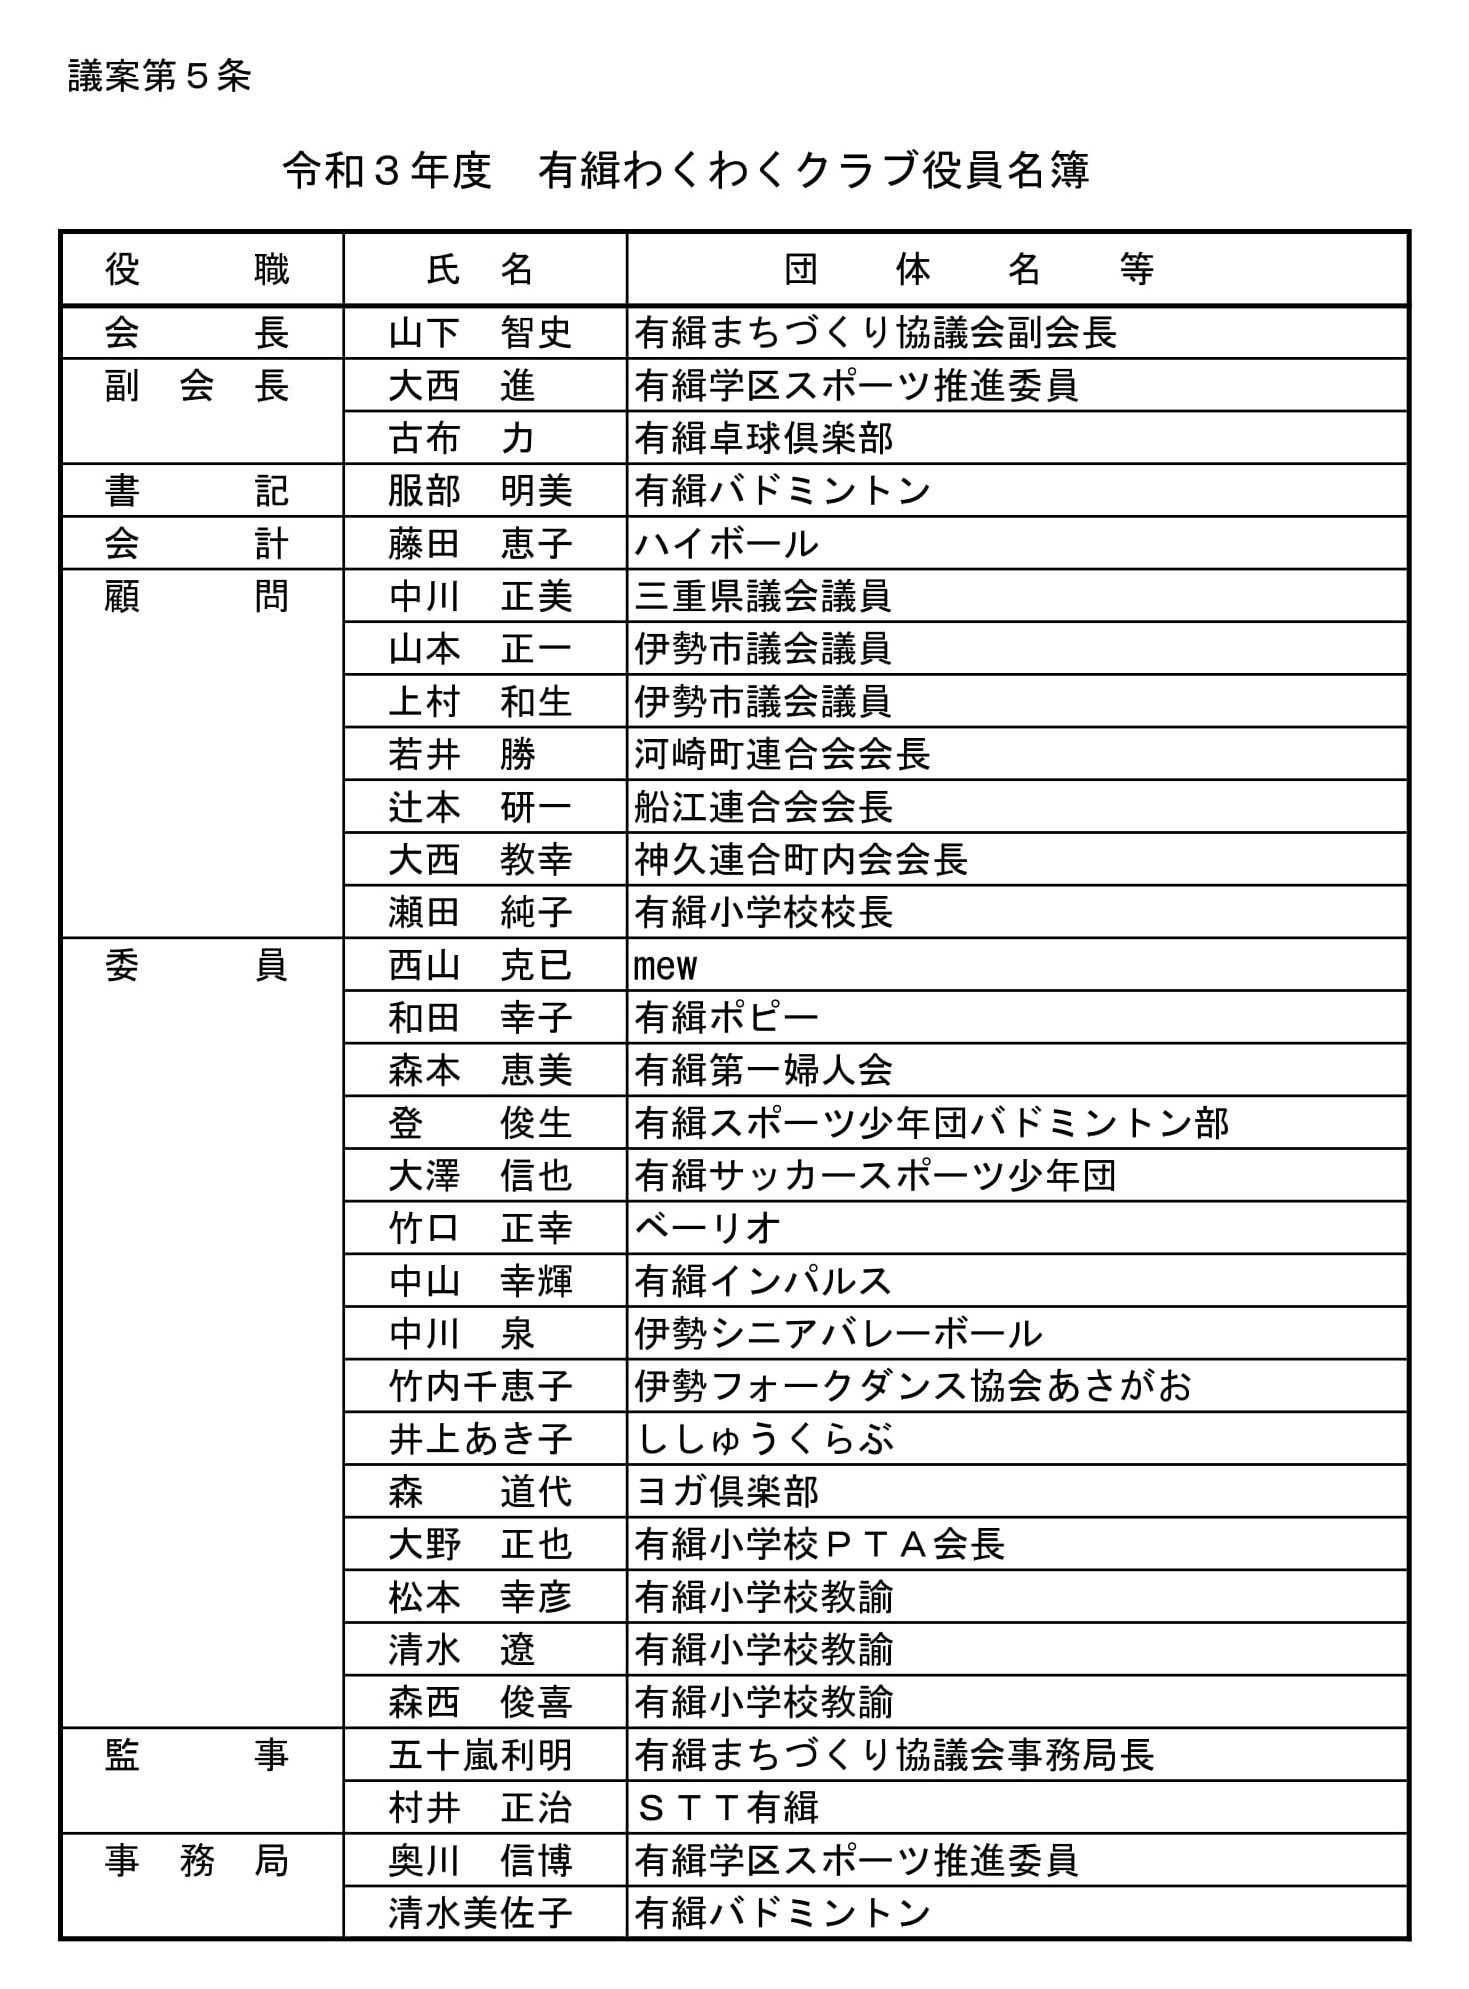 令和３年度役員名簿 (1)-11